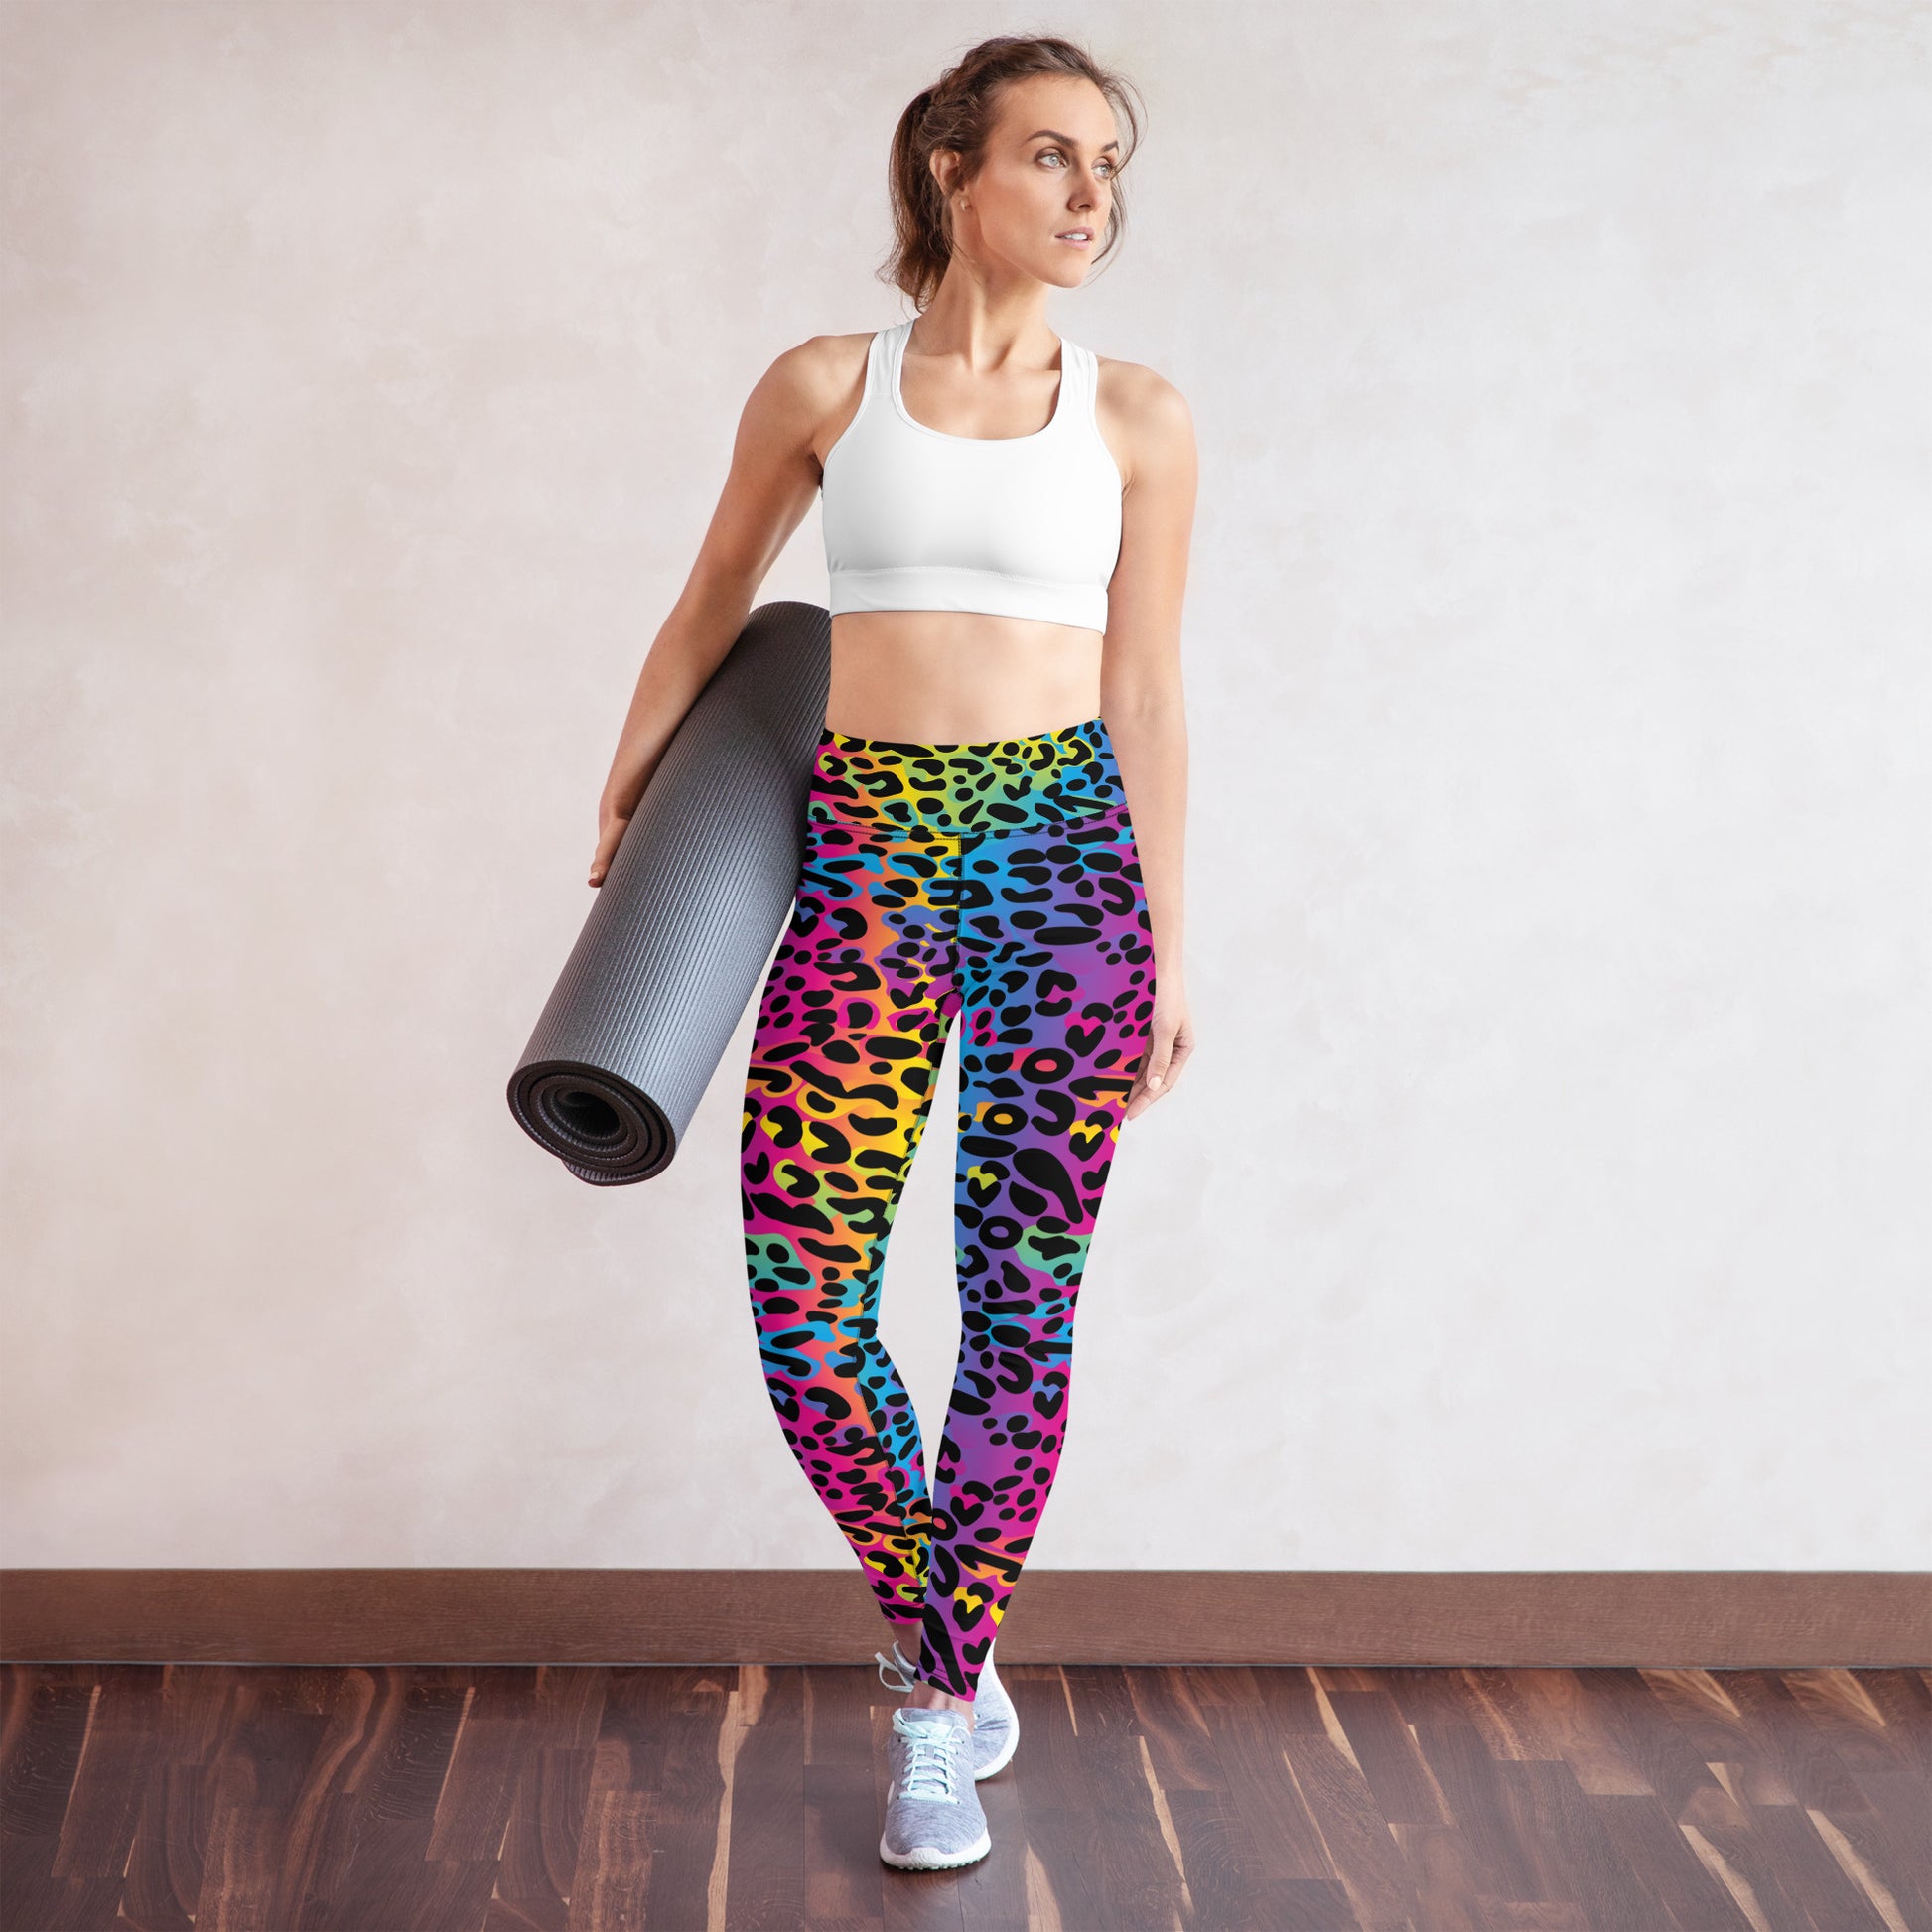 Cheetah Print Sports Bra, Gym Bra, Workout Bra, Yoga Bra, Colorful